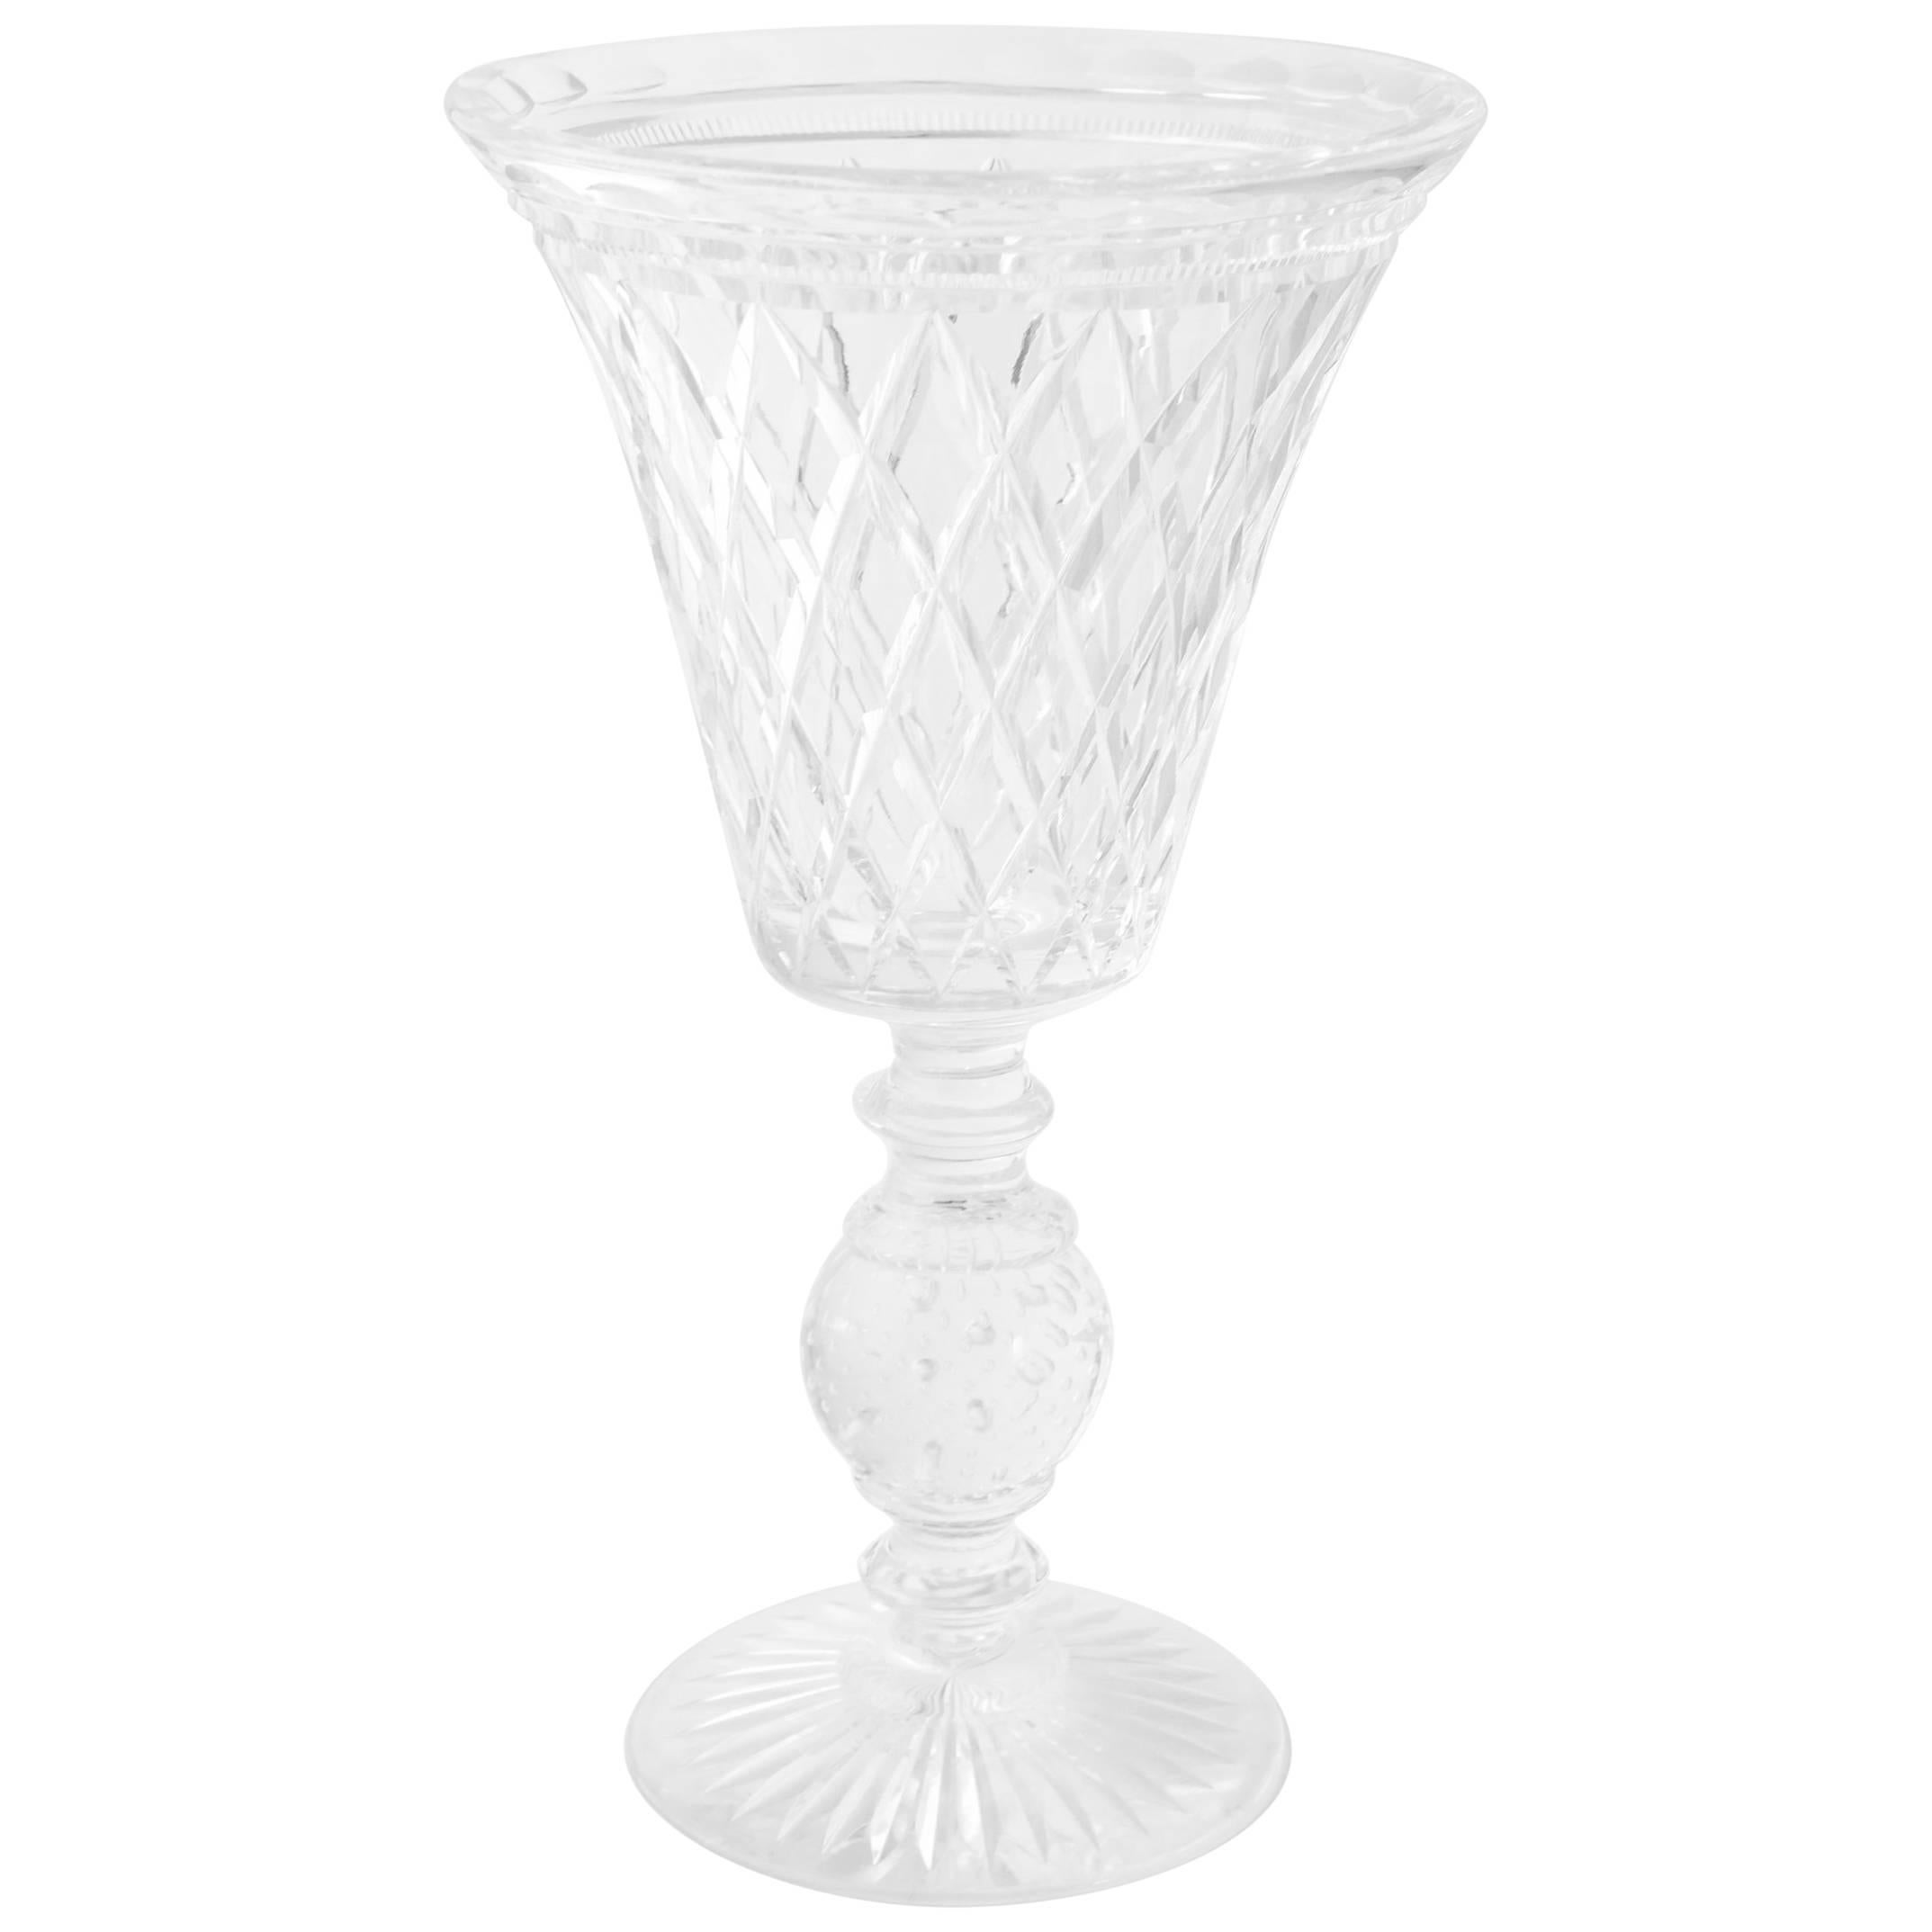 Grand vase en forme de calice en verre taillé Pairpoint, datant du milieu du 20ème siècle